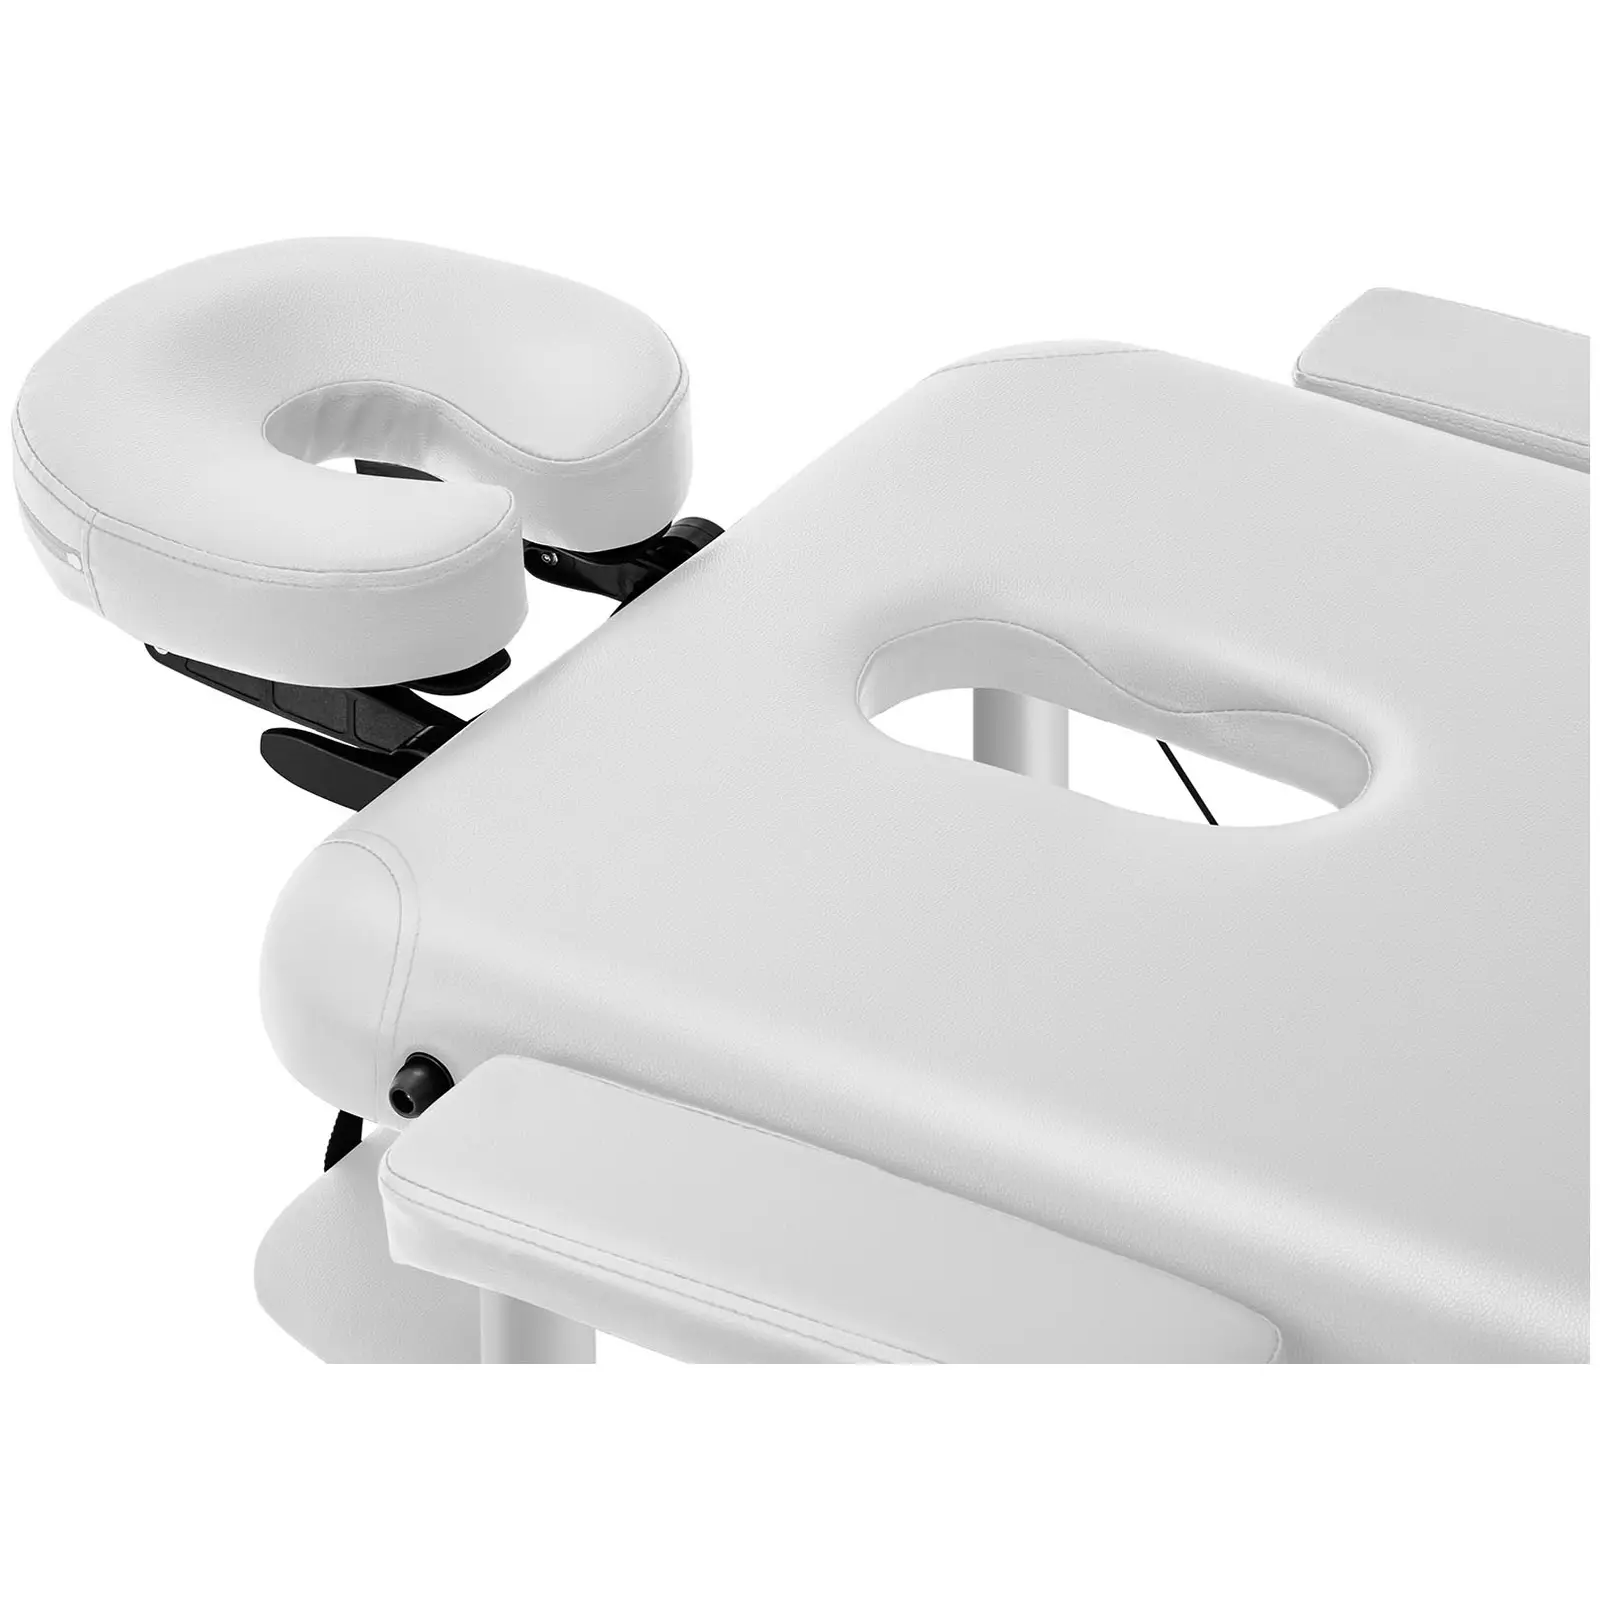 Cama de massagem - portátil - 185 x 60 x 59 cm - 180 kg - Branco